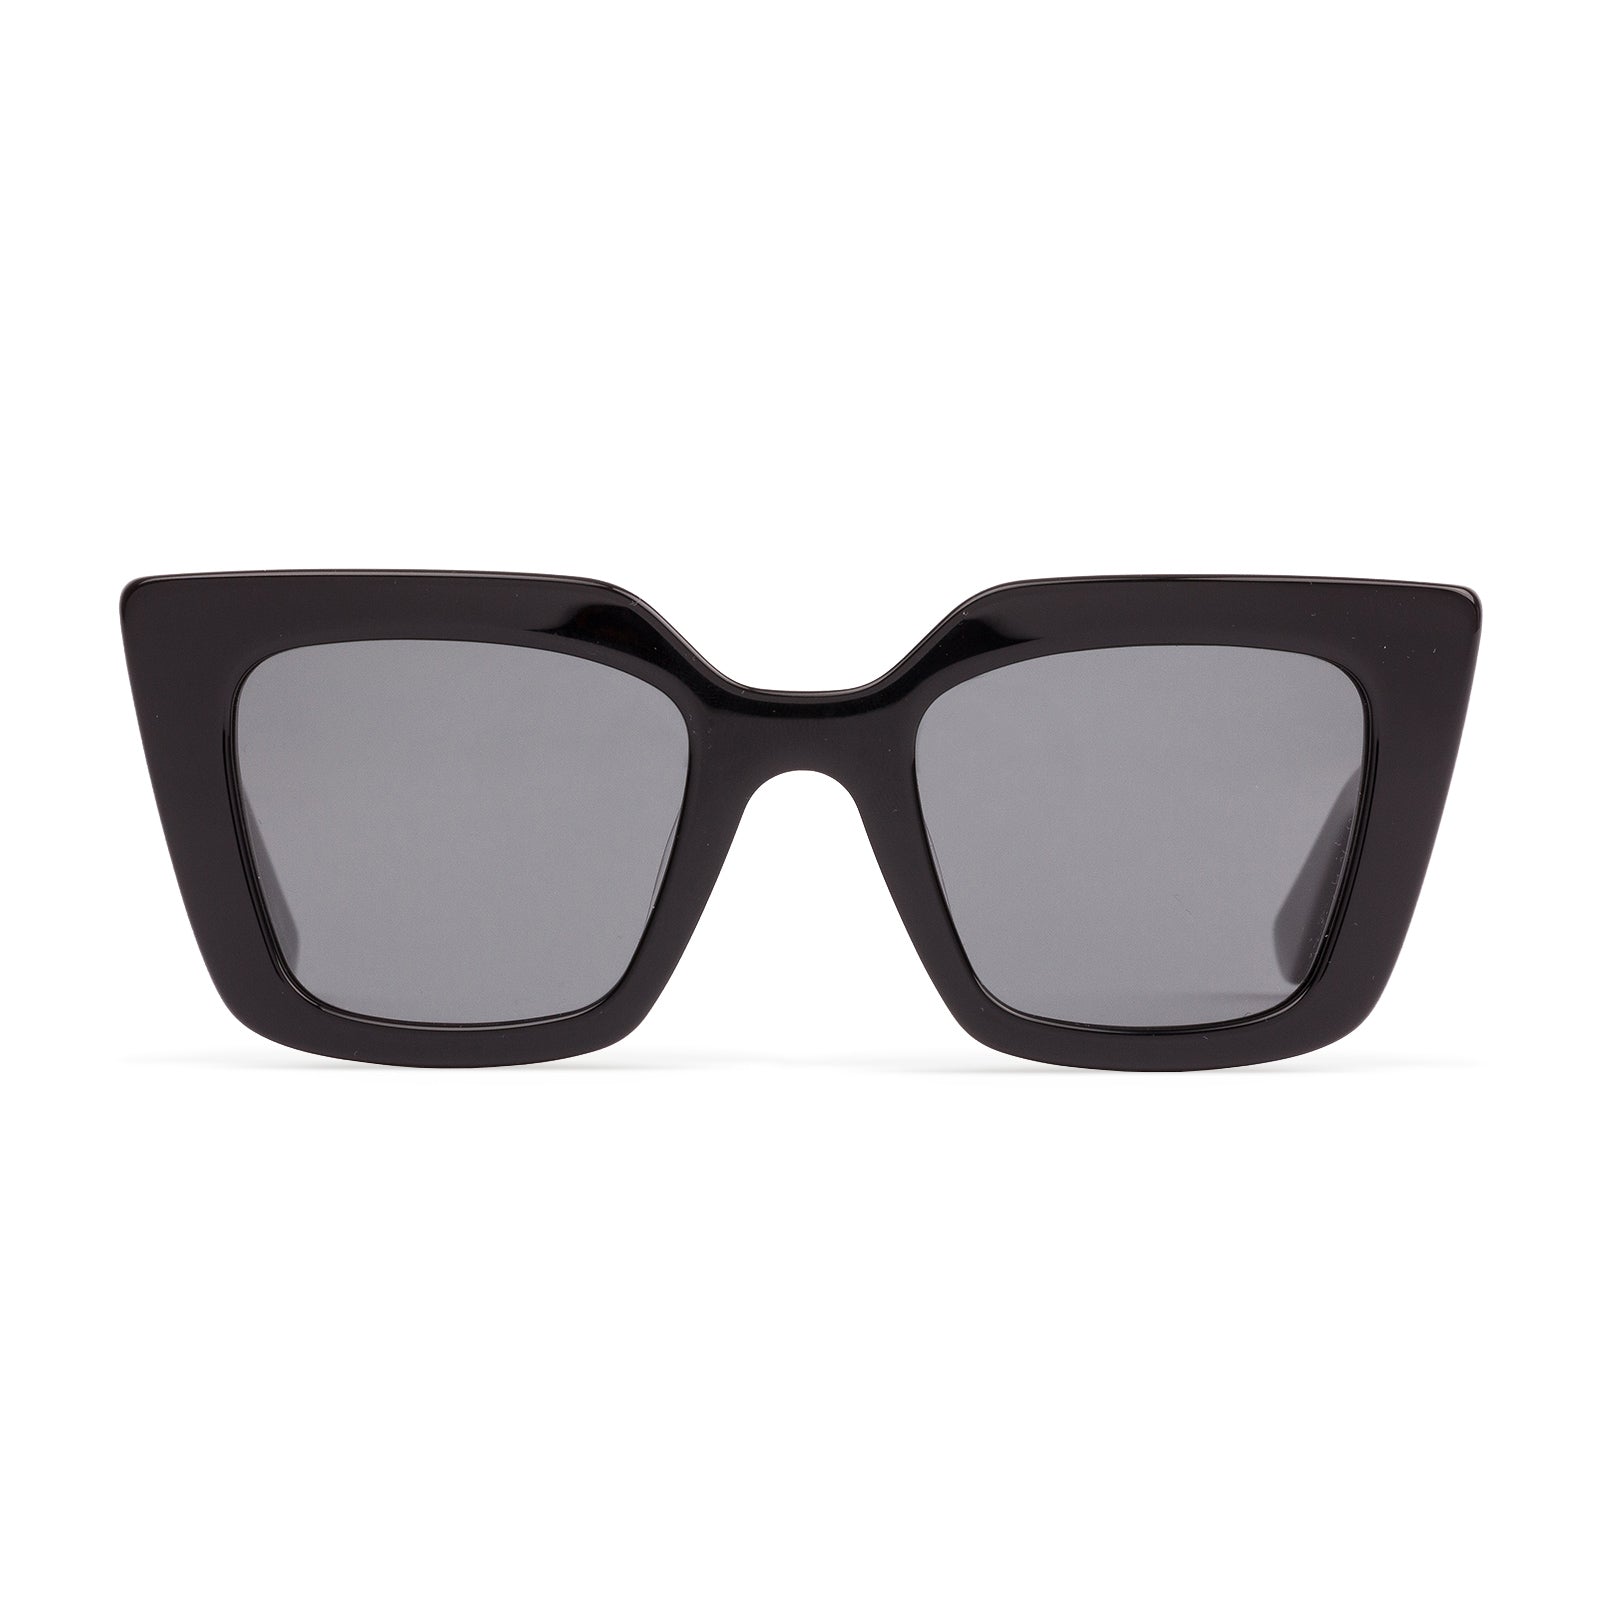 Sito Cult Vision Polarized Sunglasses